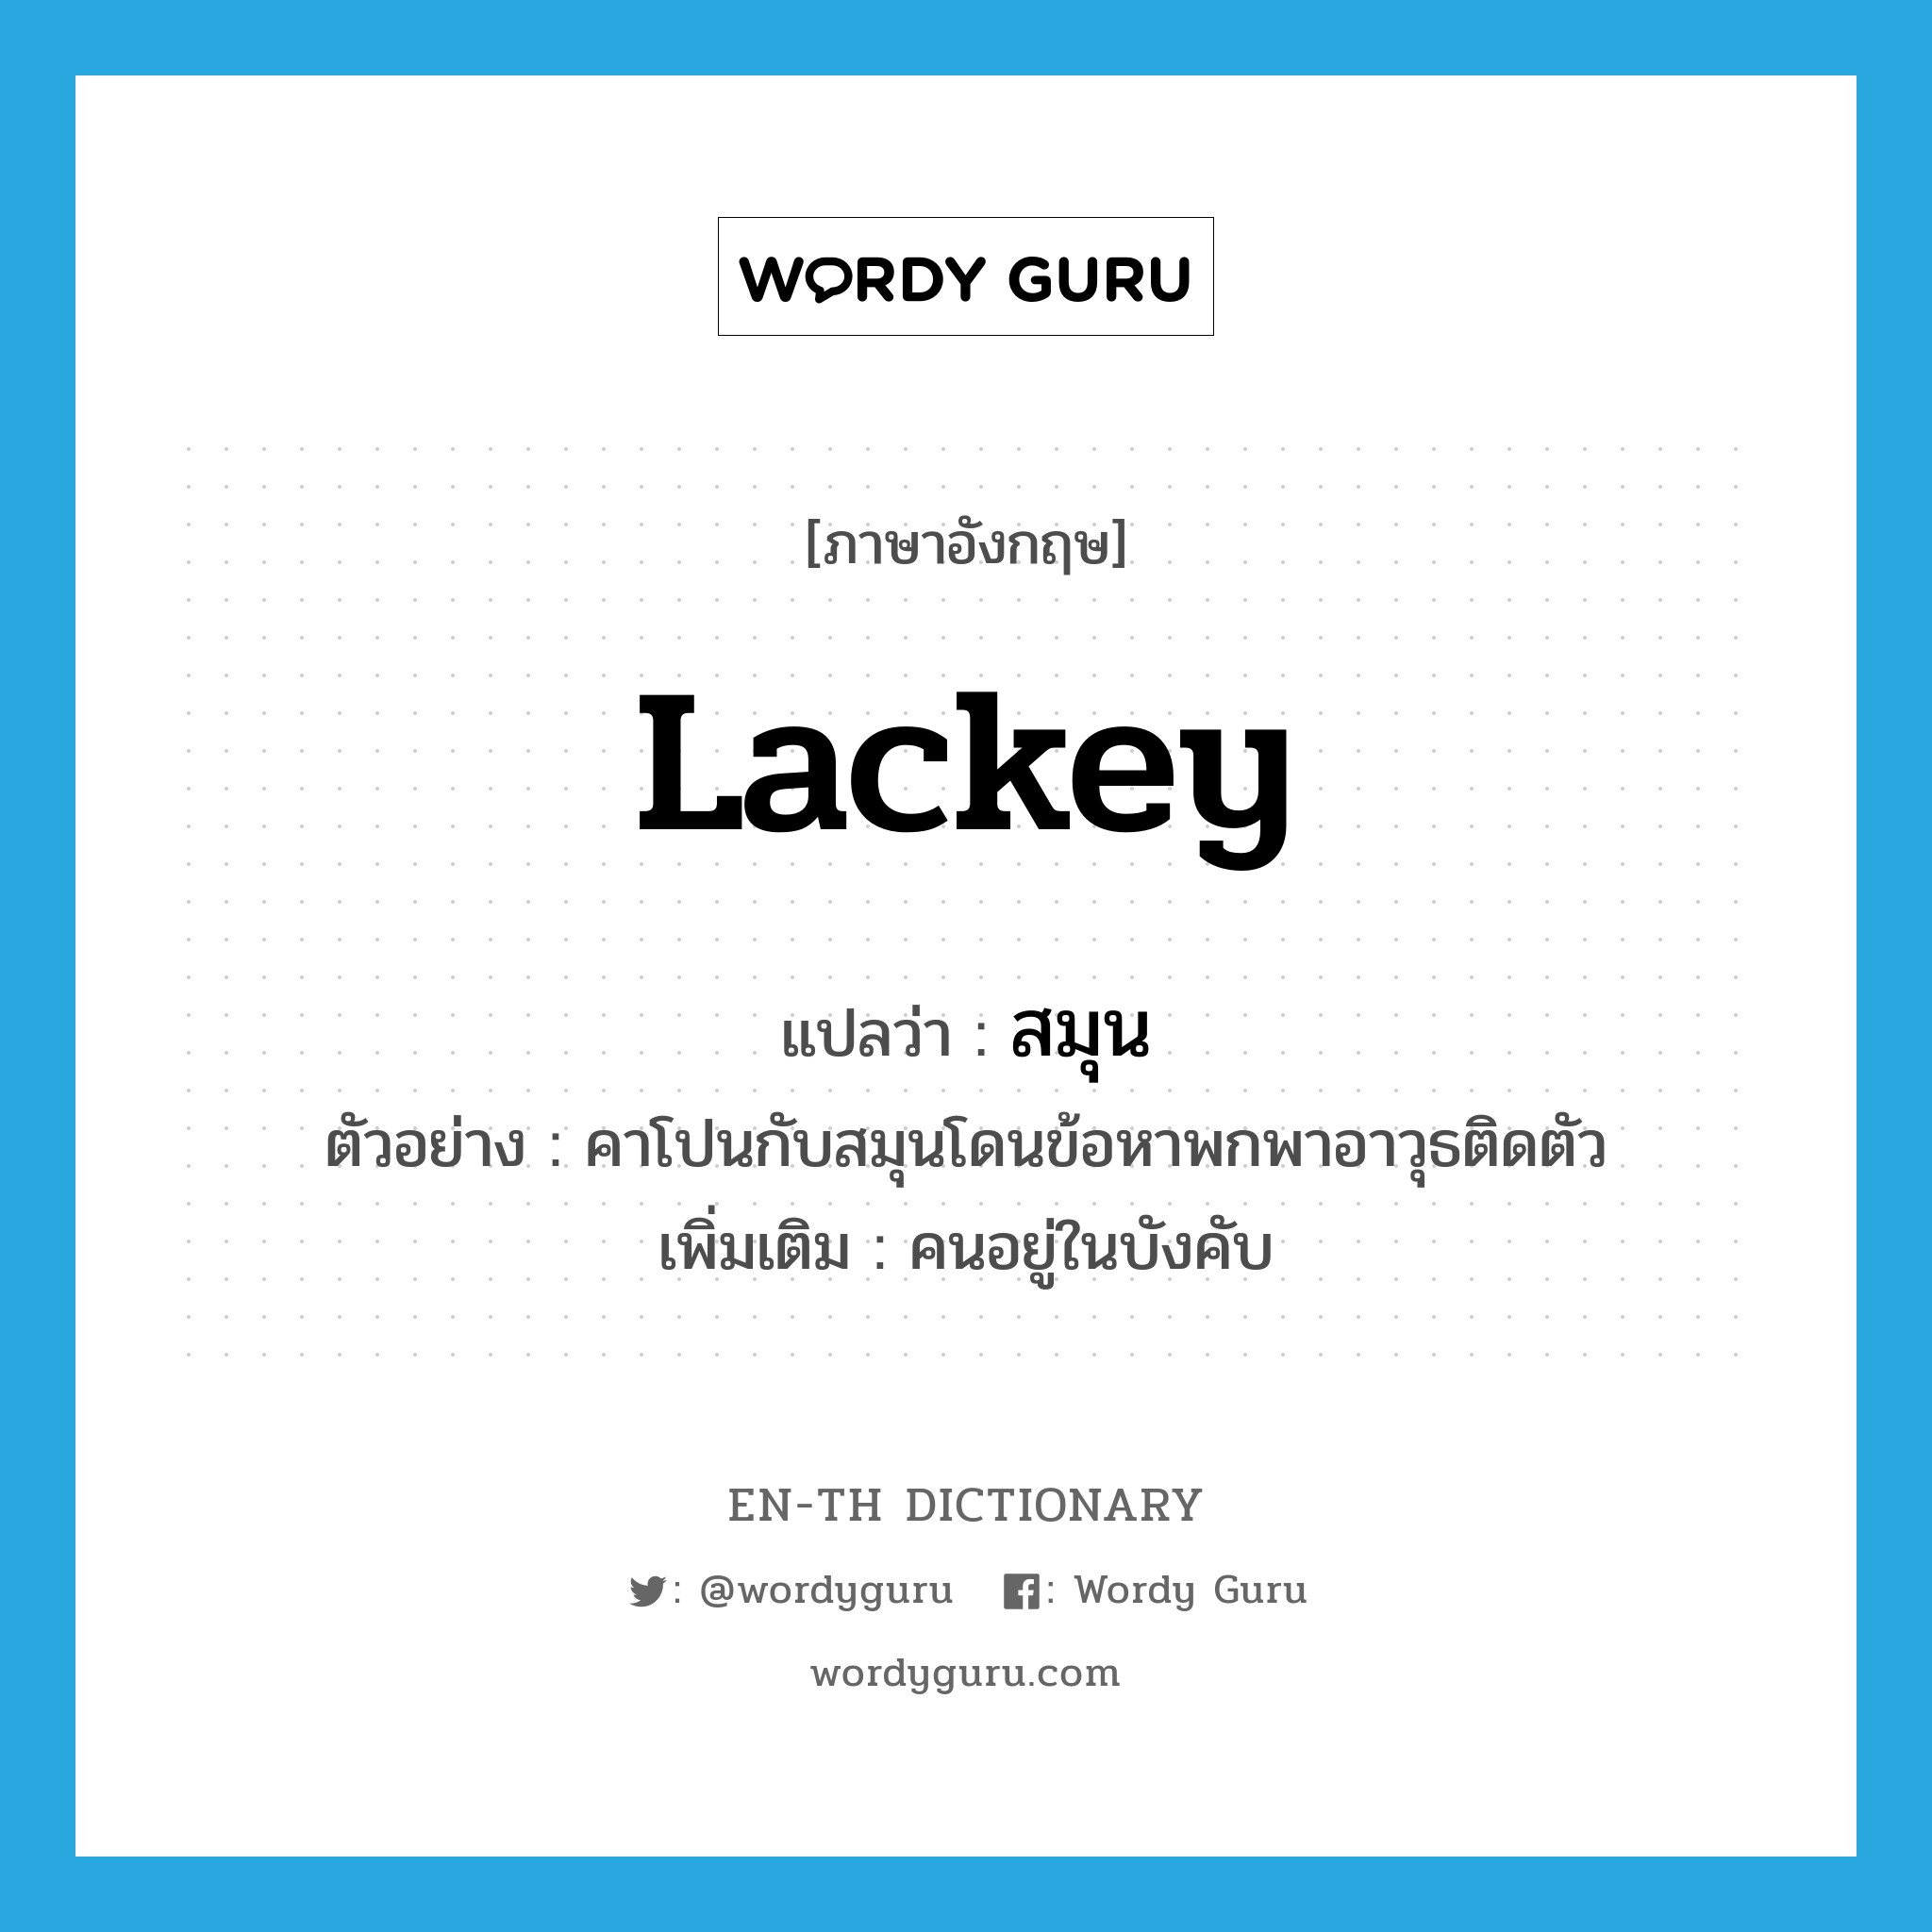 lackey แปลว่า?, คำศัพท์ภาษาอังกฤษ lackey แปลว่า สมุน ประเภท N ตัวอย่าง คาโปนกับสมุนโดนข้อหาพกพาอาวุธติดตัว เพิ่มเติม คนอยู่ในบังคับ หมวด N